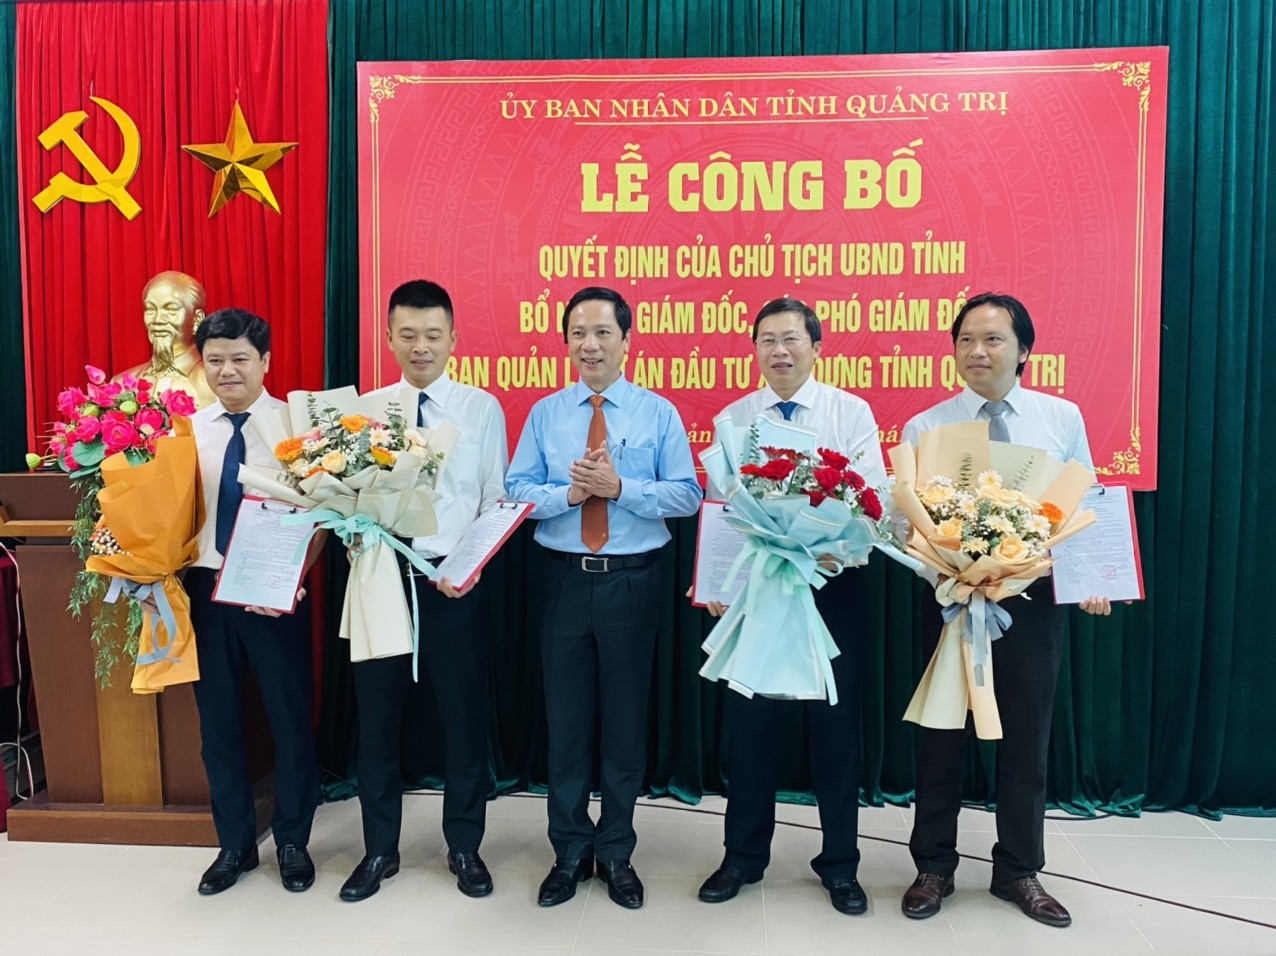 Phó Chủ tịch UBND tỉnh Hoàng Nam trao quyết định bổ nhiệm cho giám đốc và các phó giám đốc Ban Quản lý dự án đầu tư xây dựng tỉnh - Ảnh: T.P